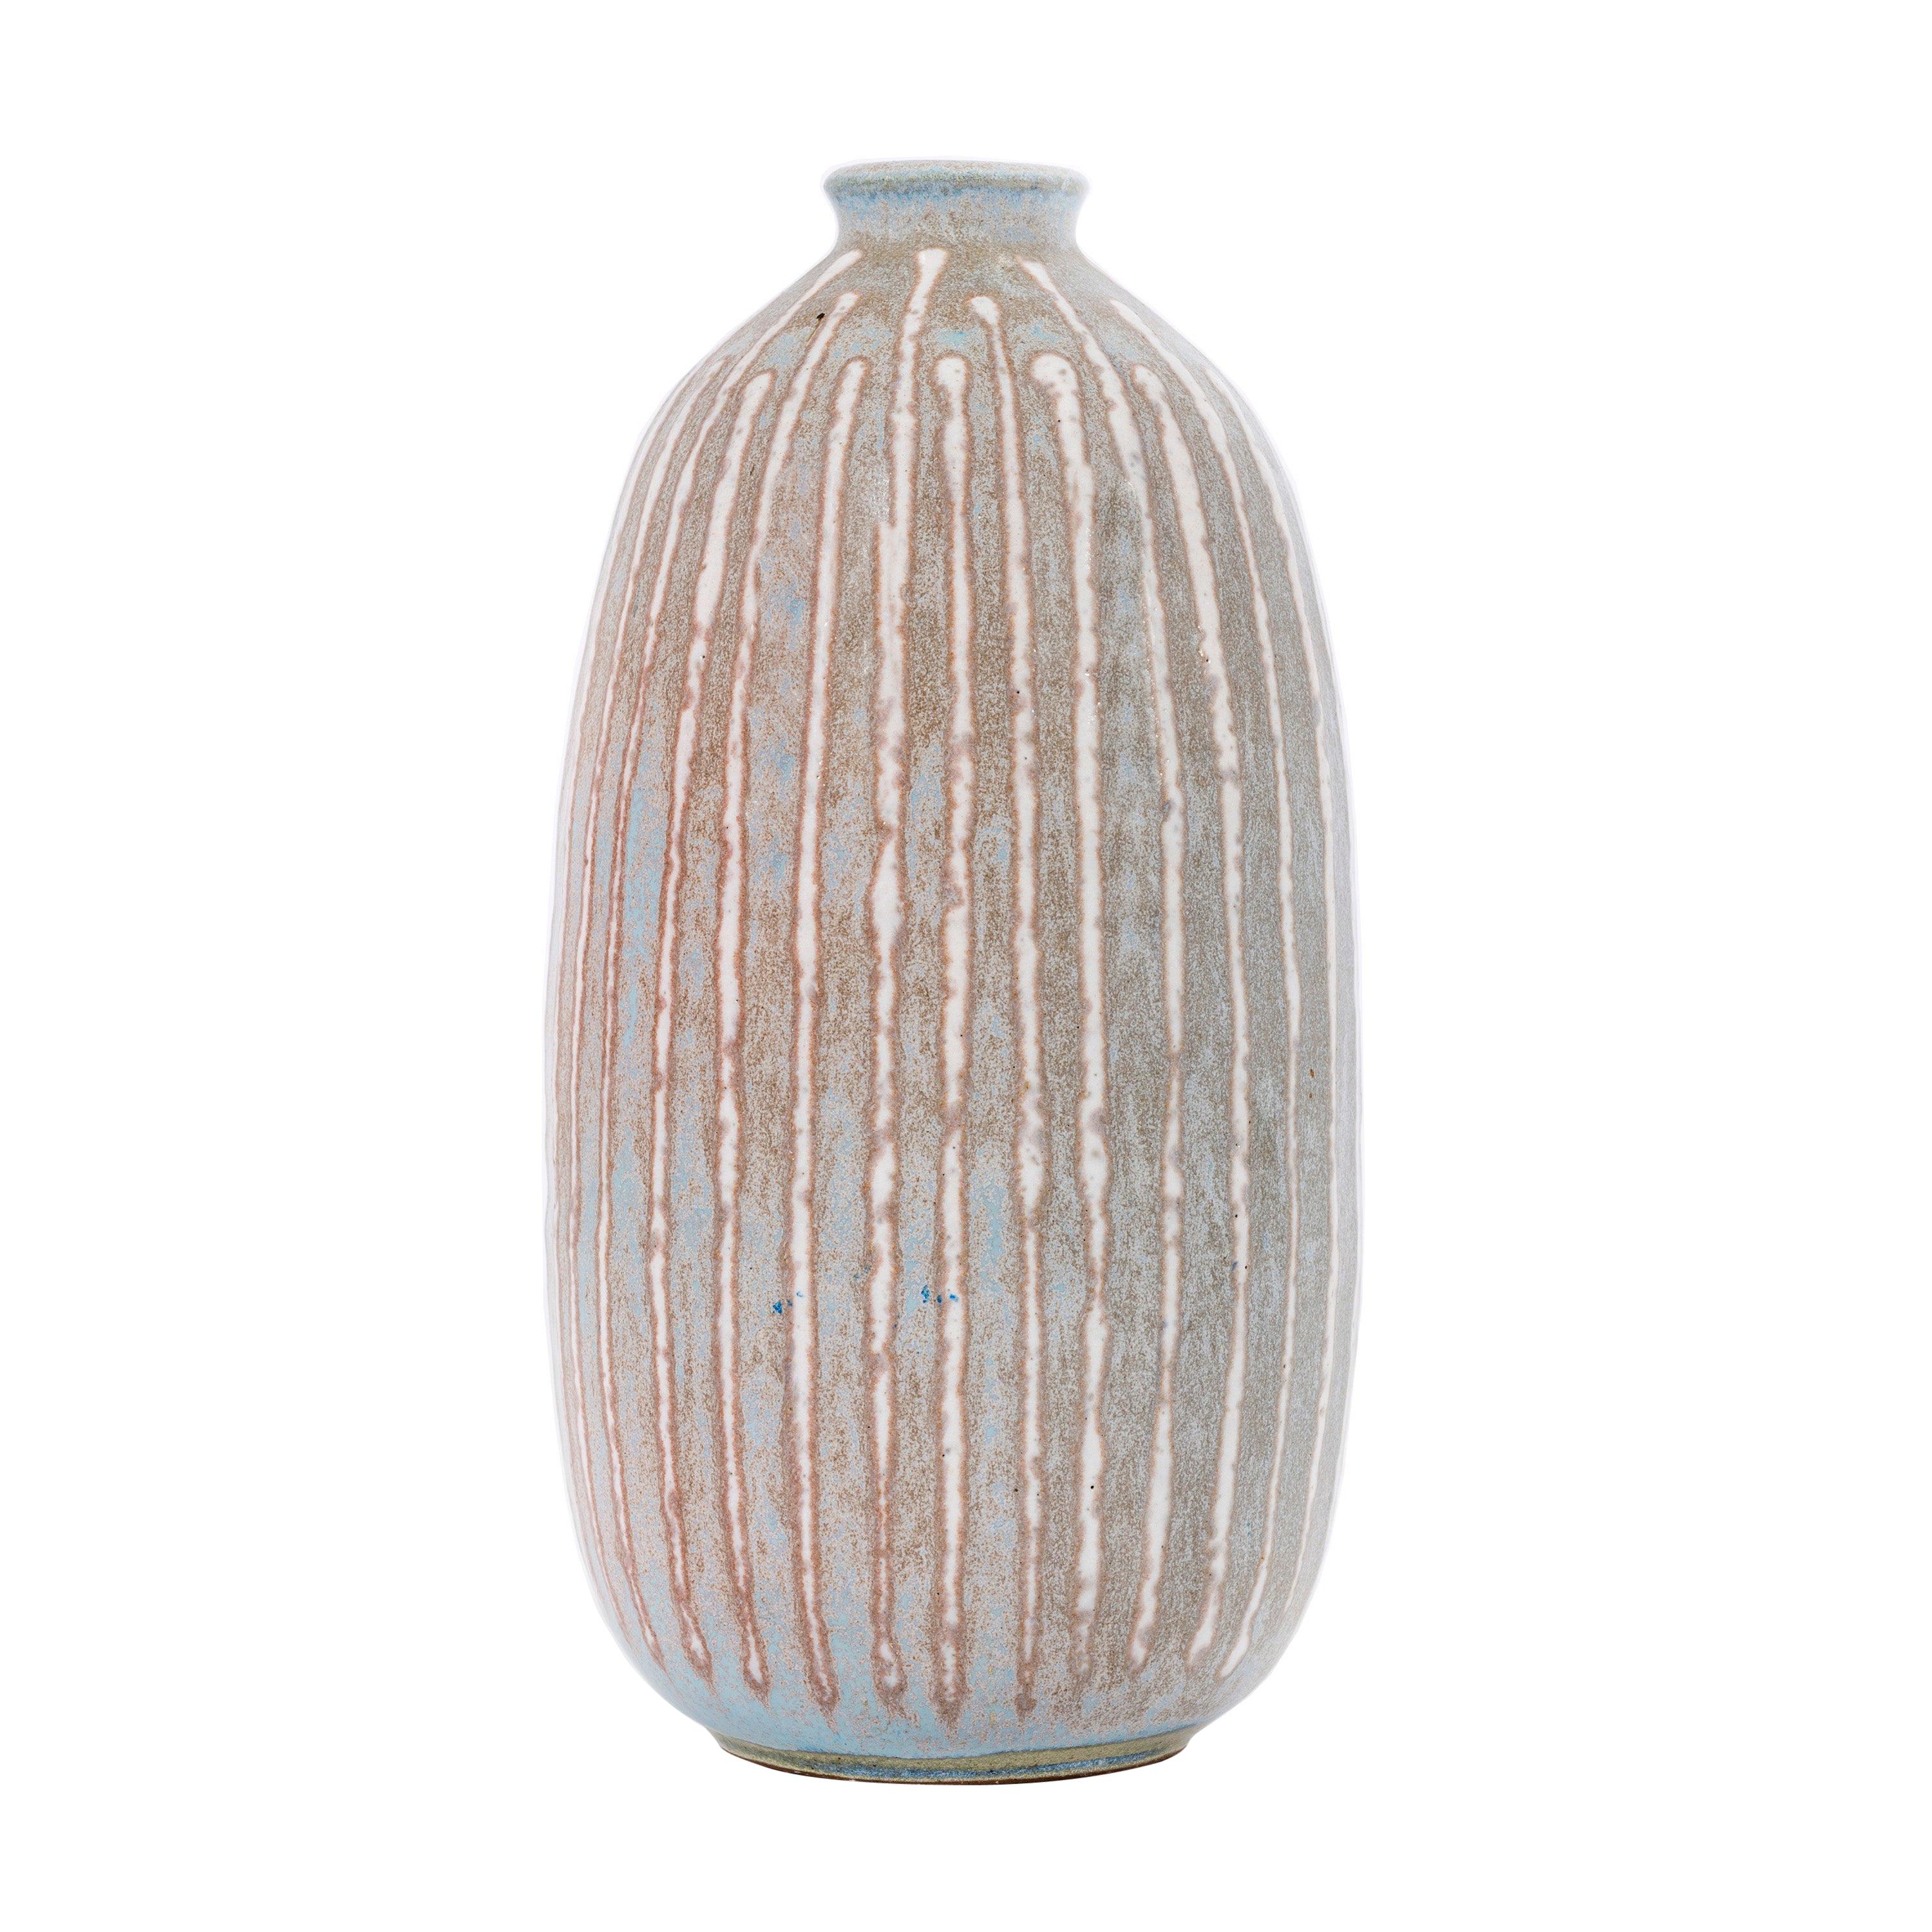 Clyde Burt Ceramic Vase For Sale